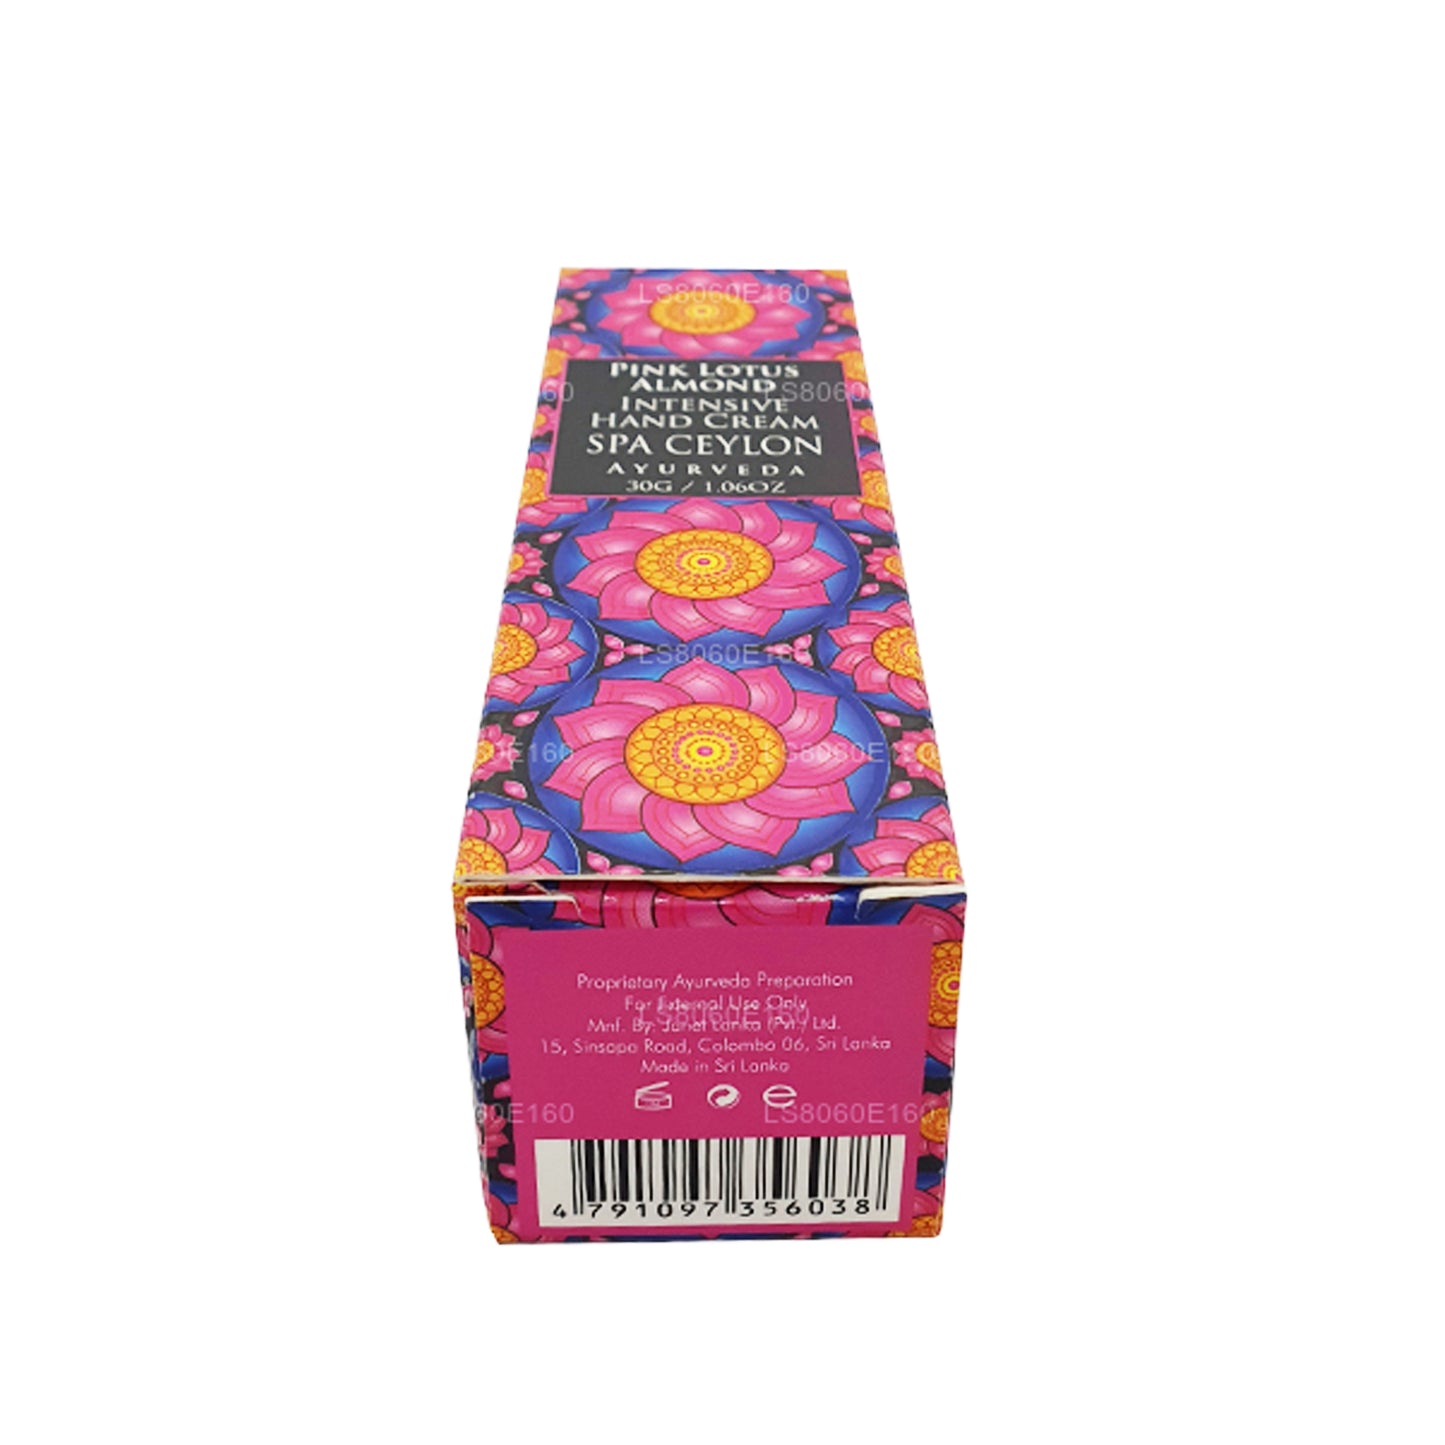 Spa Ceylon Pink Lotus Mandel Intensiv Håndcreme (30 g)